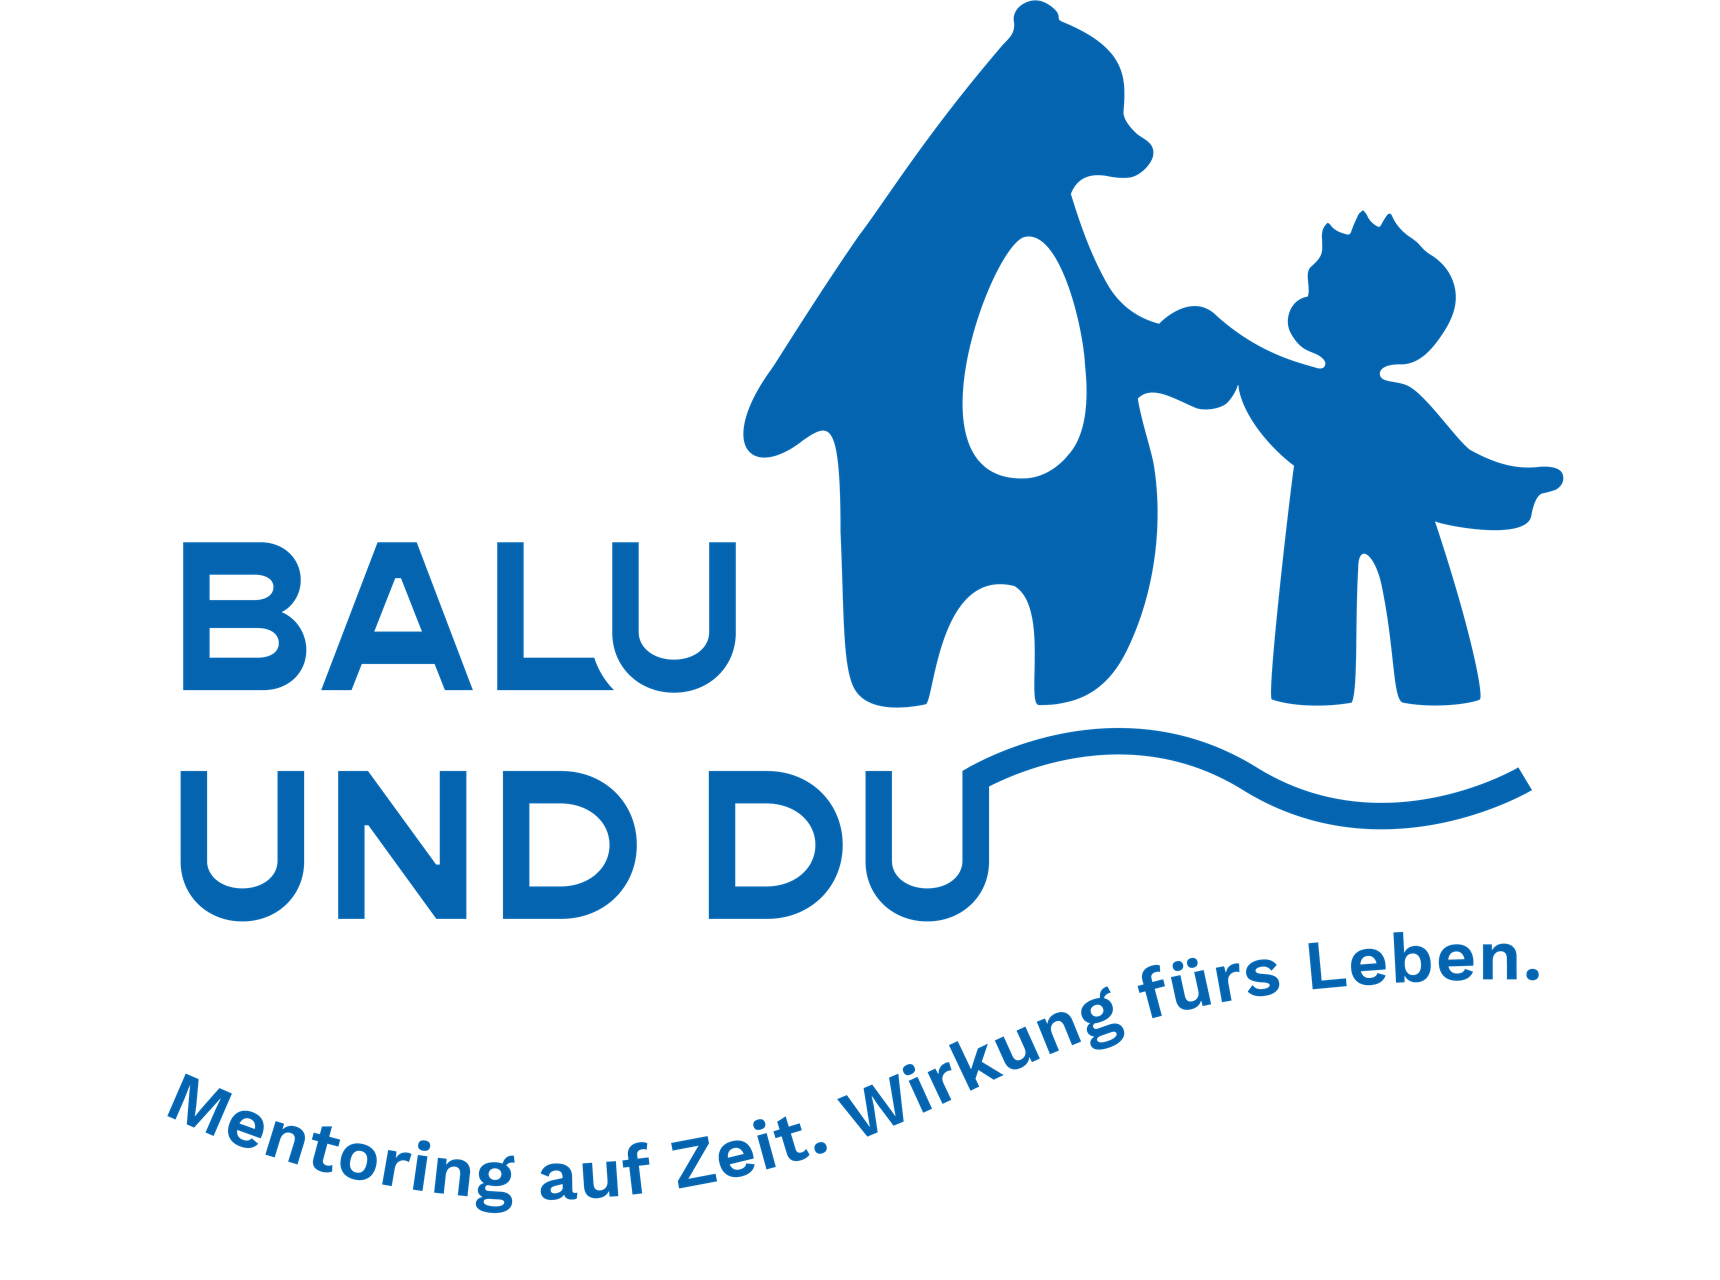 Balu und Du Logo